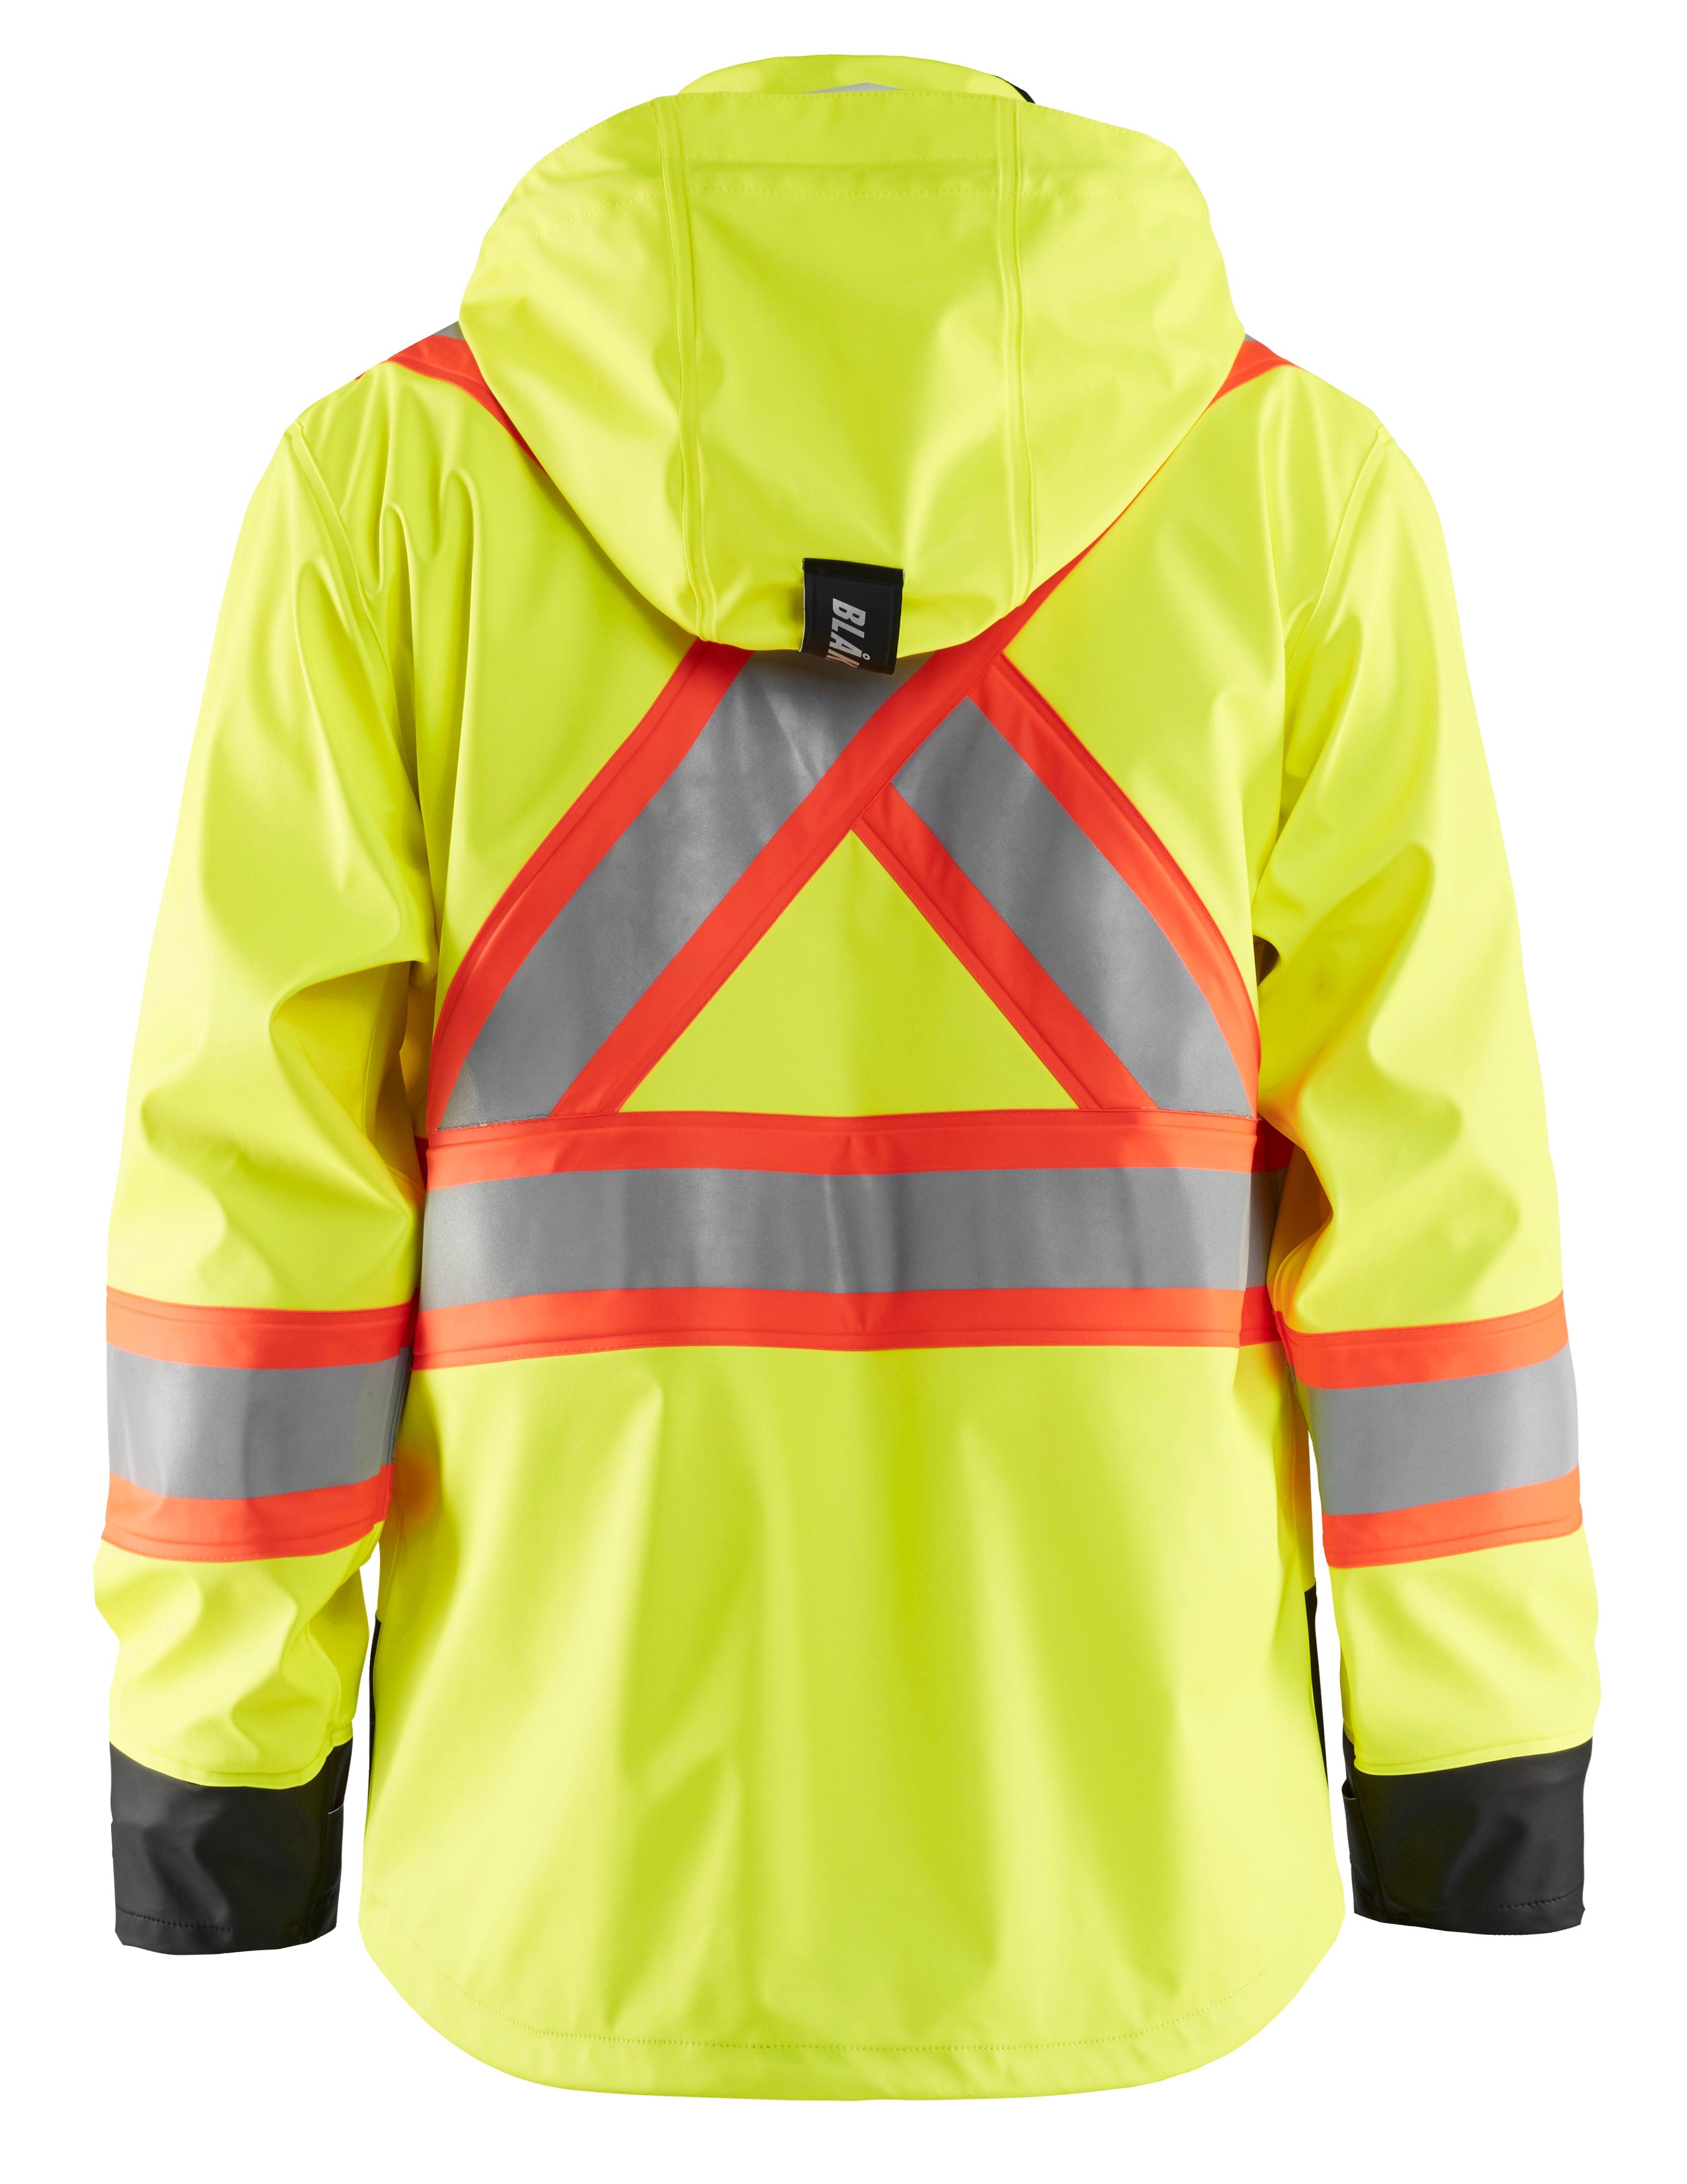 Blaklader 4319 Hi-Vis Waterproof Rain Jacket - Yellow Hi-Vis/Black - Trusted Gear Company LLC